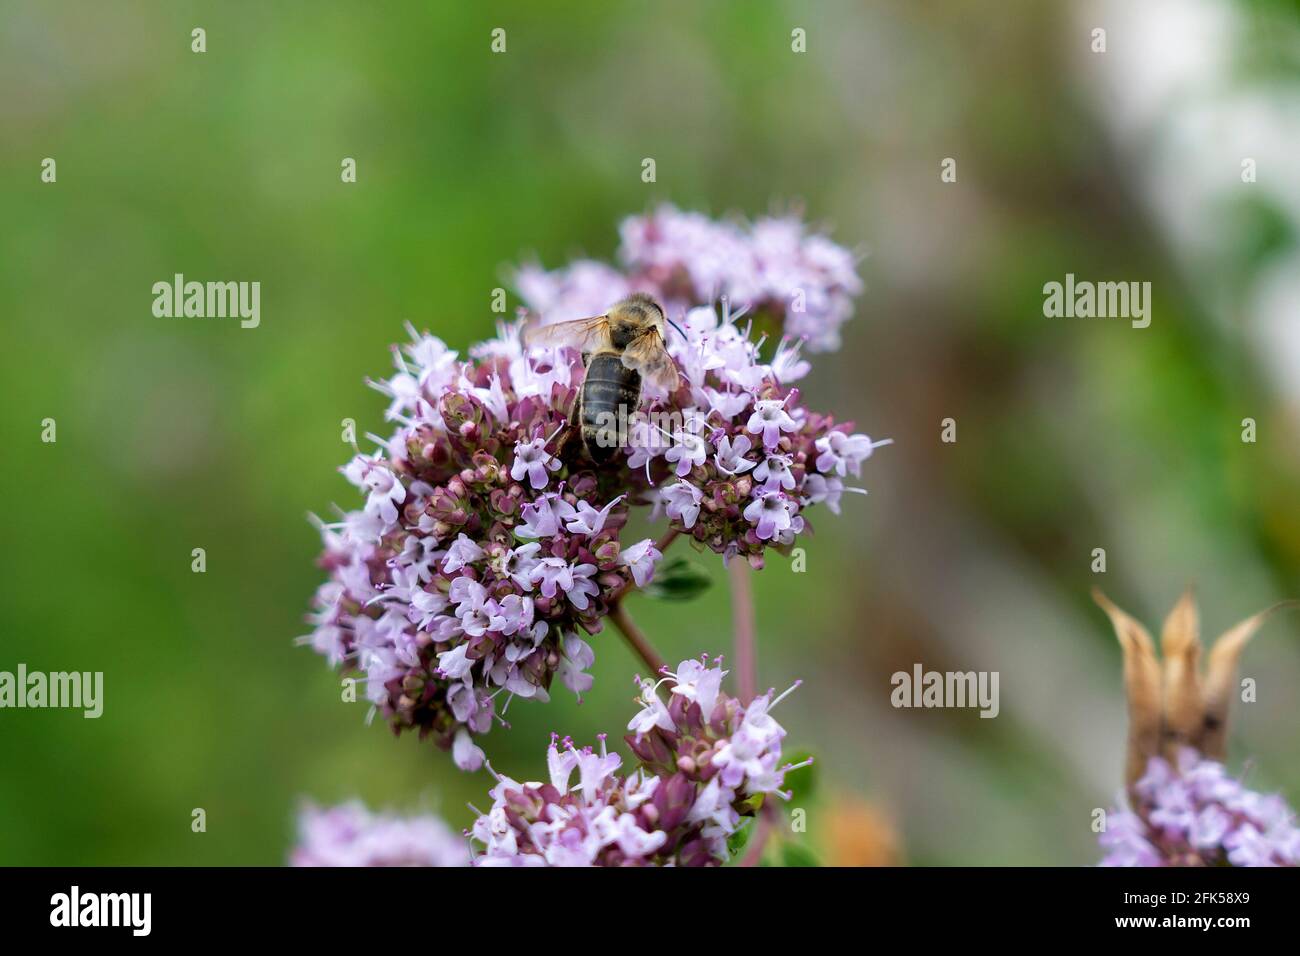 blühender Origano - Origanum - im Kräutergarten mit Biene Stock Photo